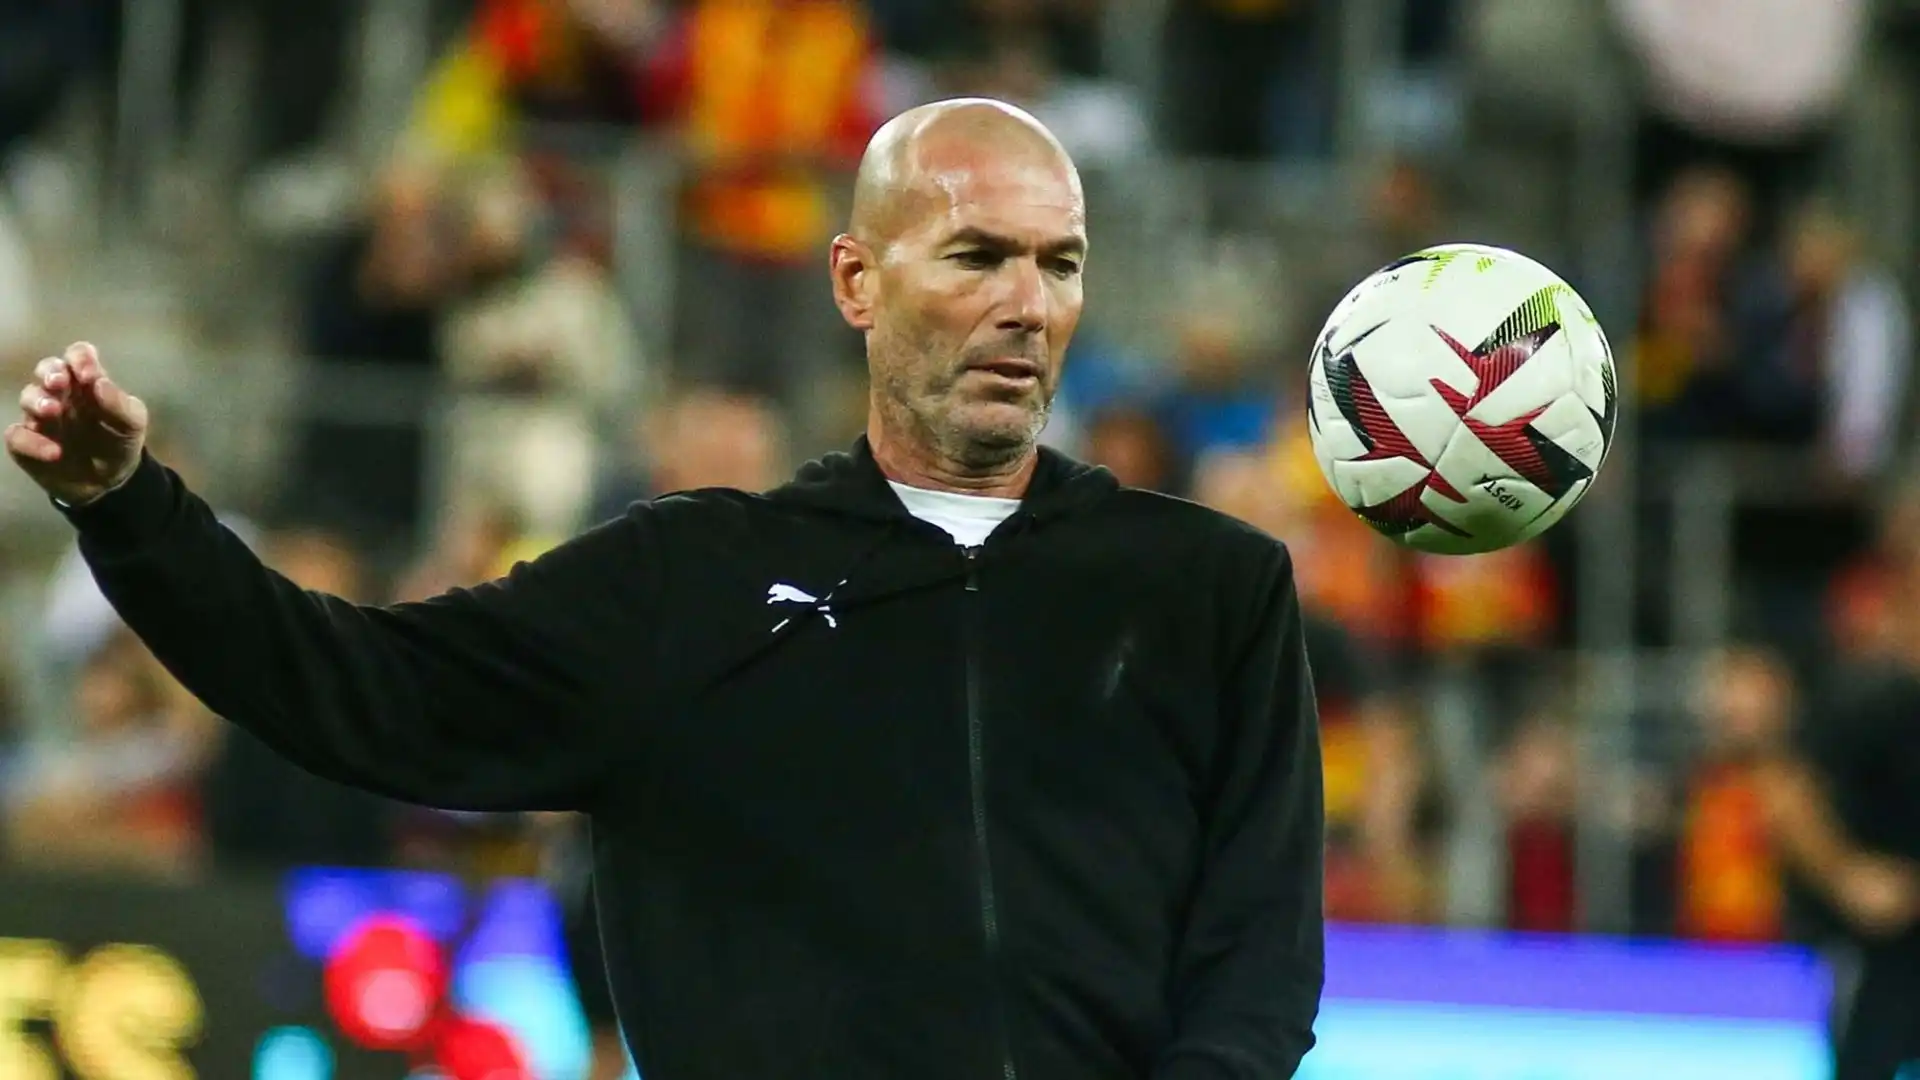 Un altro nome accostato al Bayern Monaco è quello di Zinedine Zidane